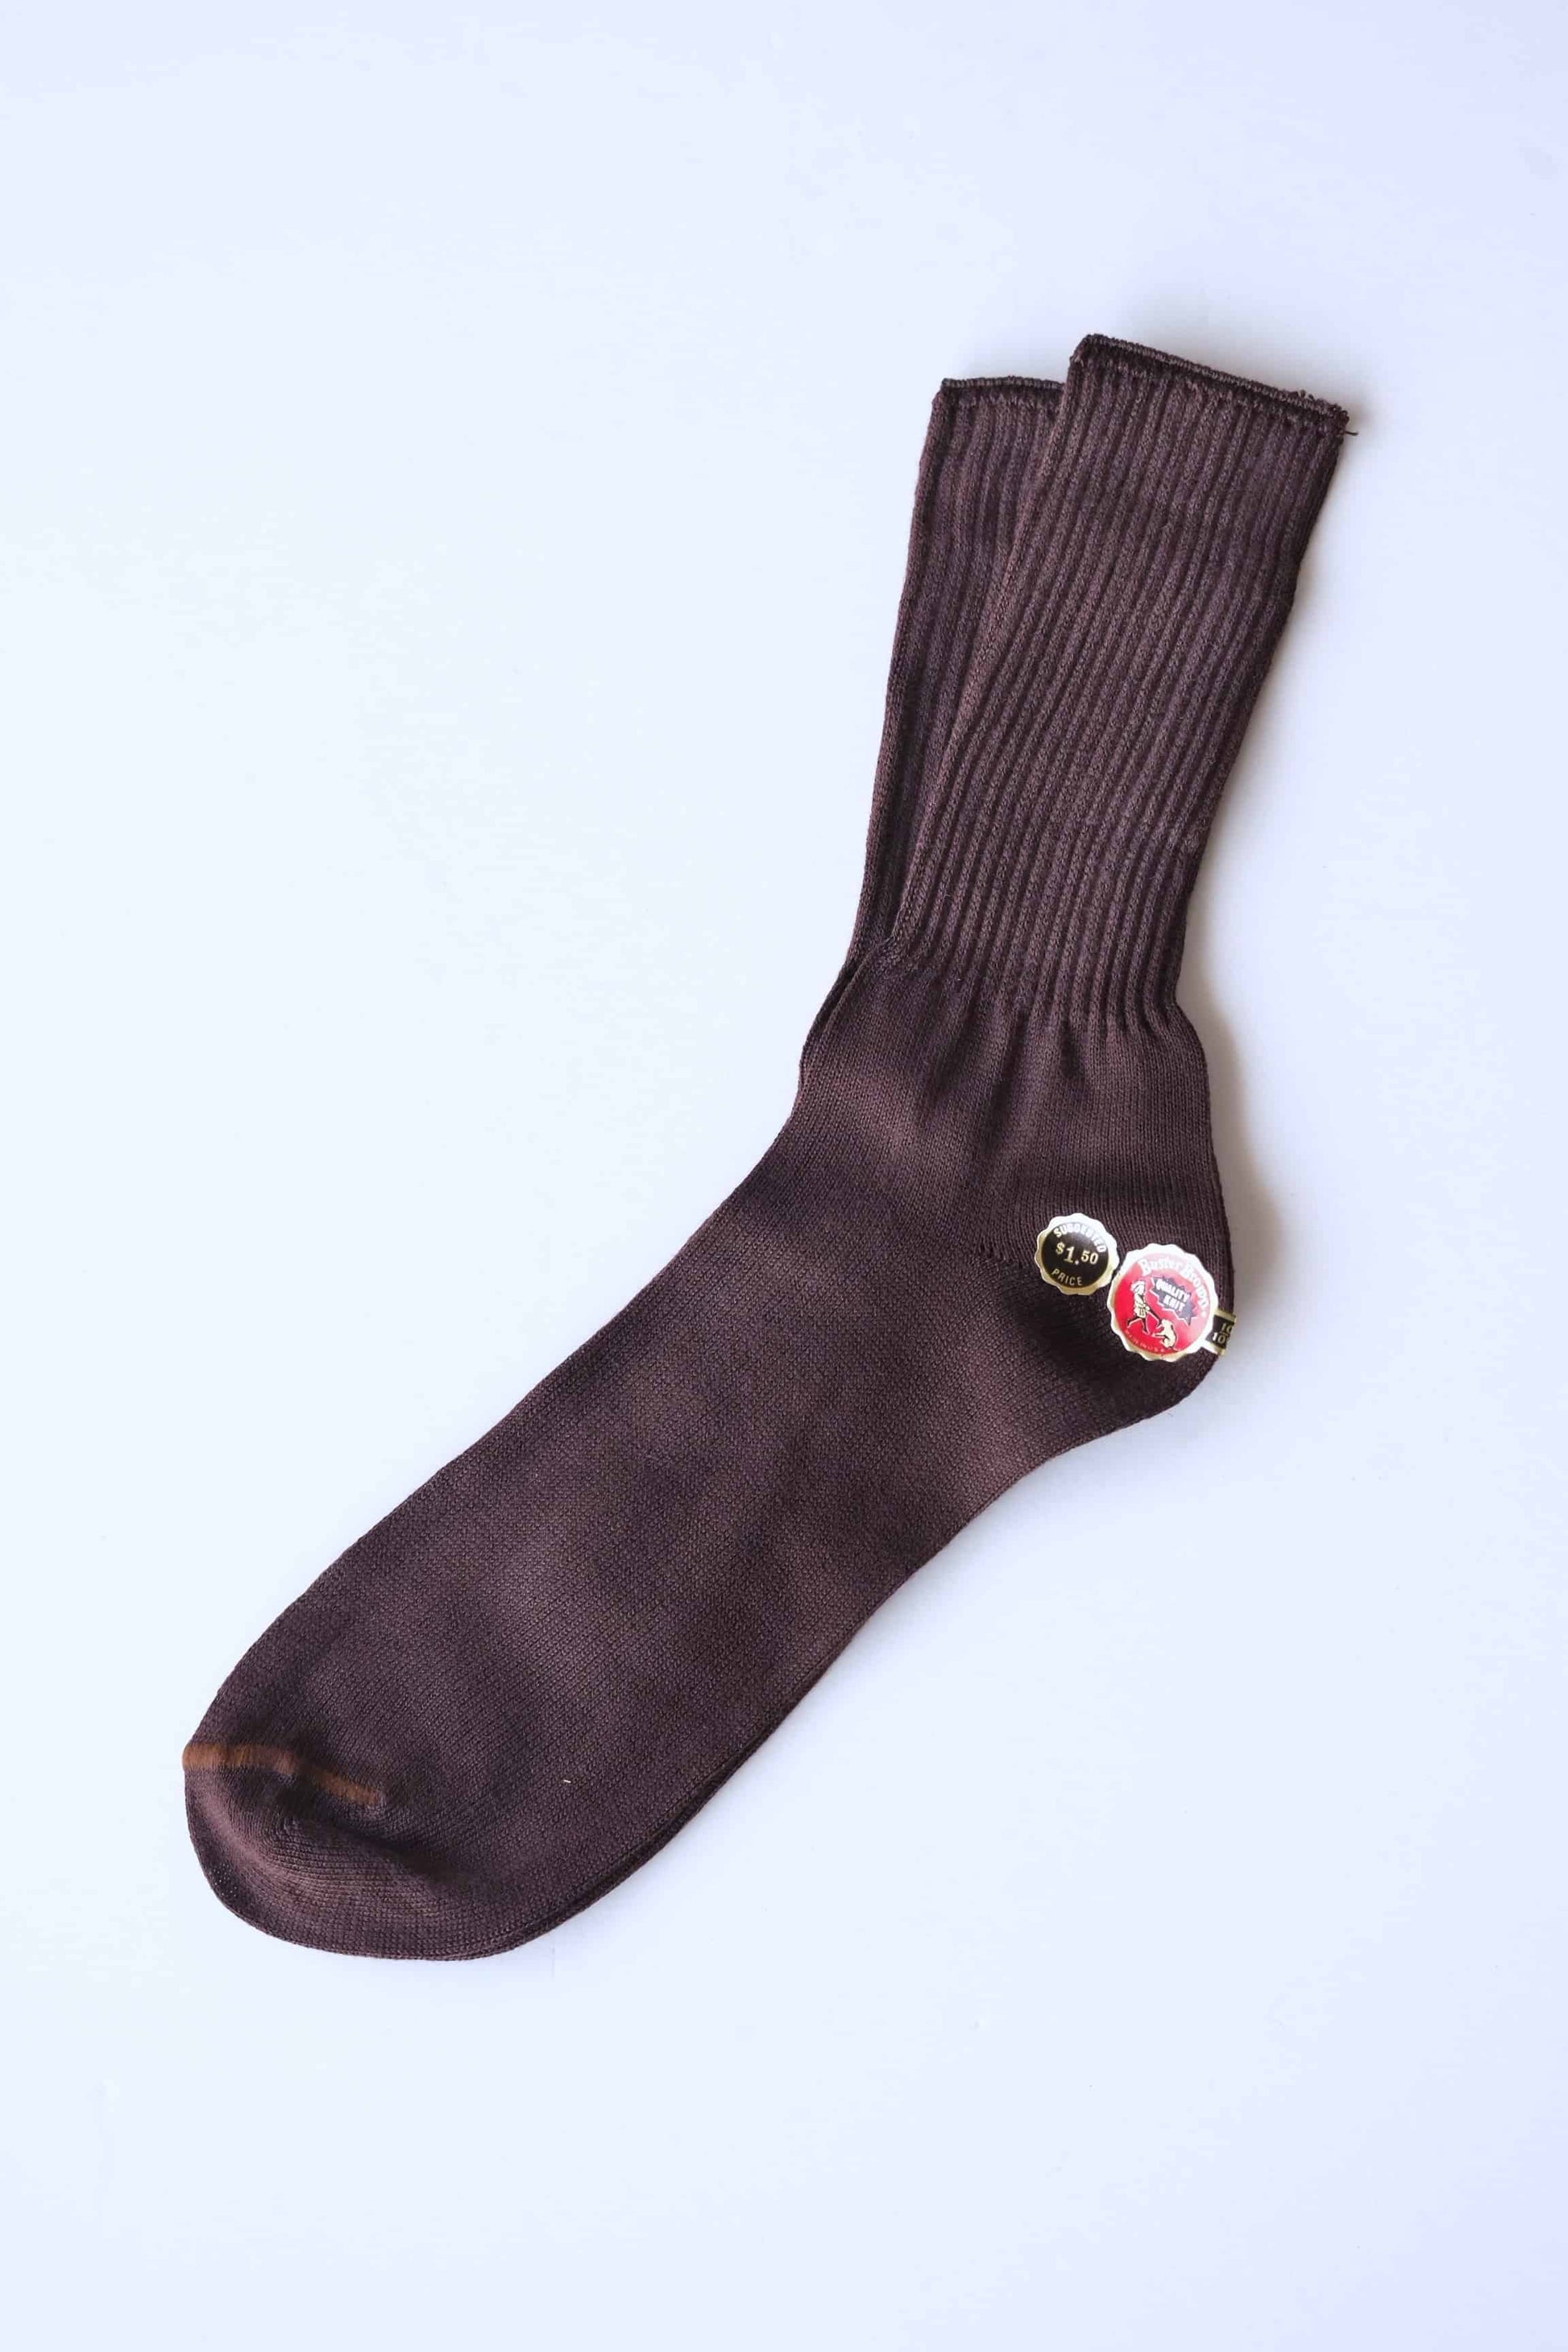 Buster Brown Socks